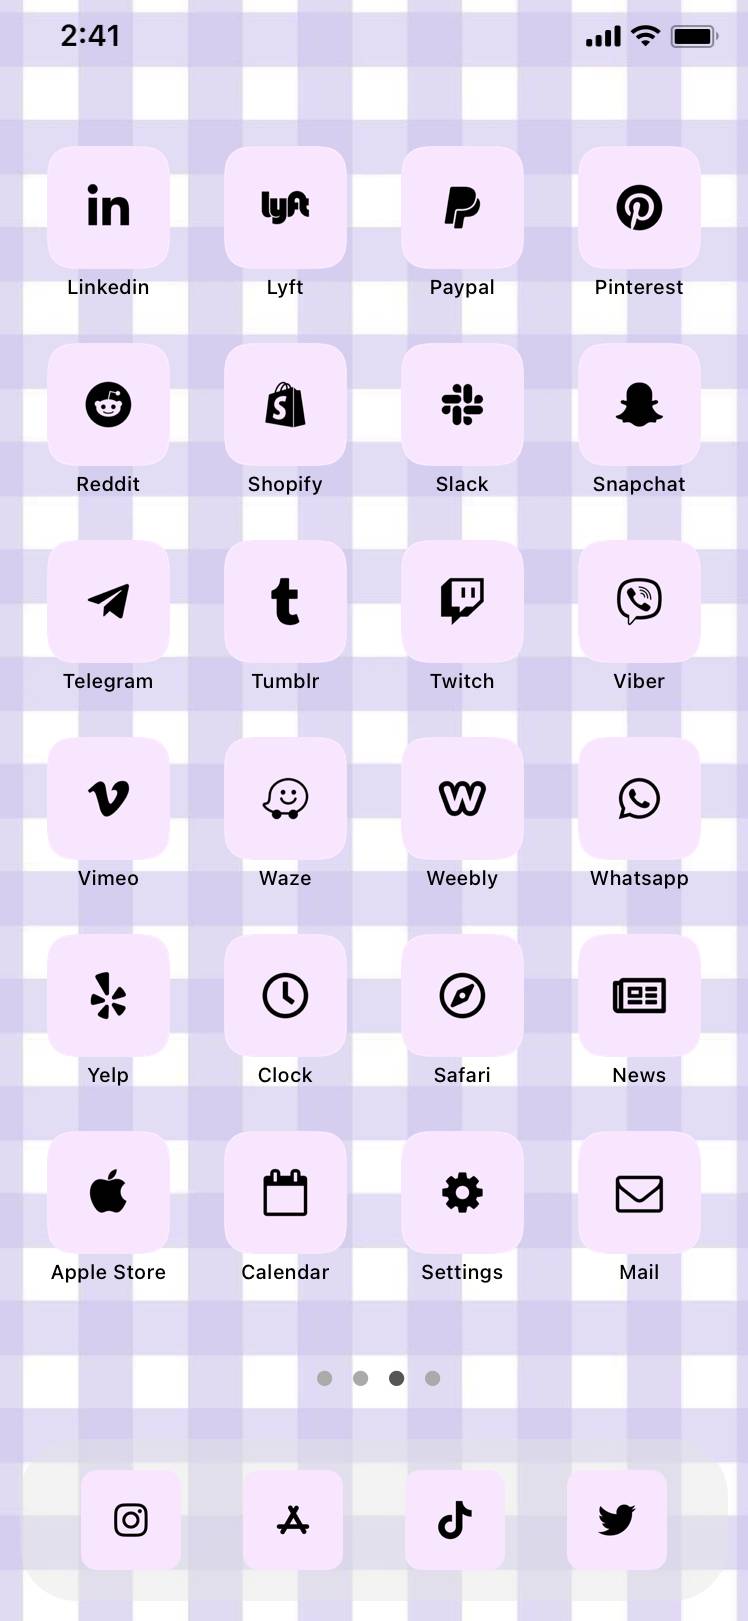 purple vibesƏsas ekran ideyaları[3tkqsQWiwckt2BMXcr9E]